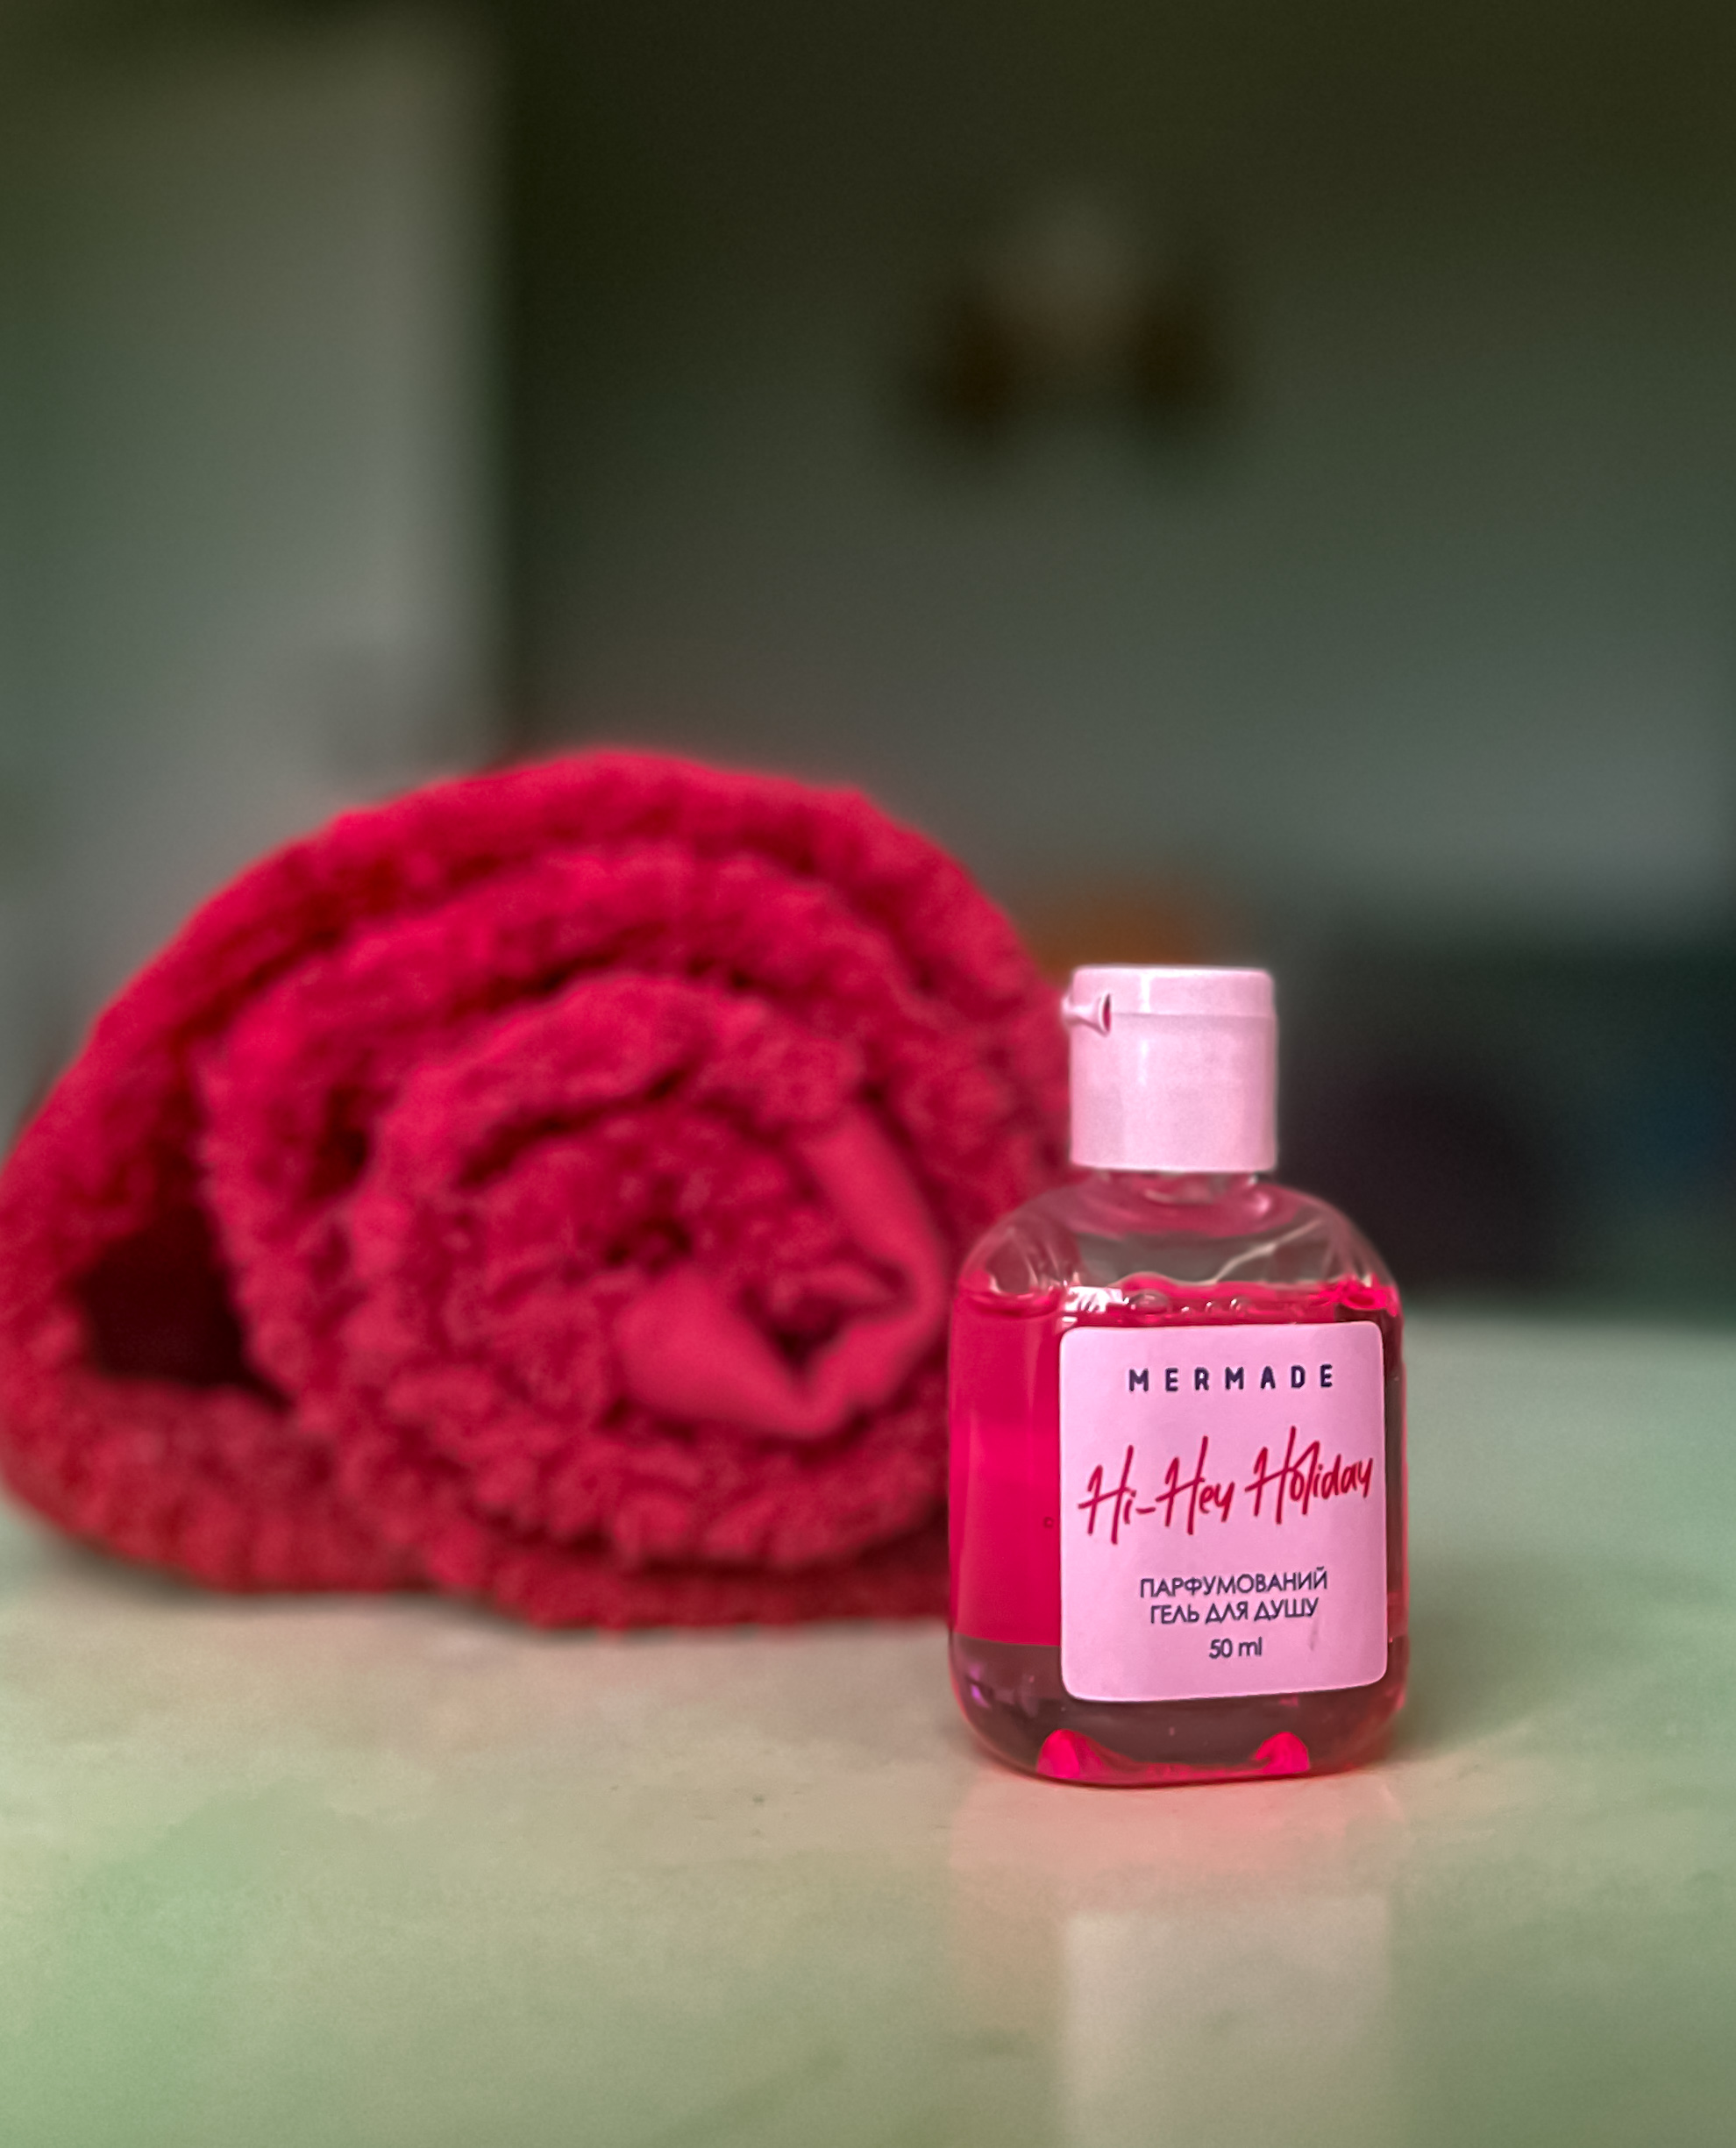 Огляд гелю для душу Mermade Hi-Hey Holiday: аромат, очищення та зручність використання